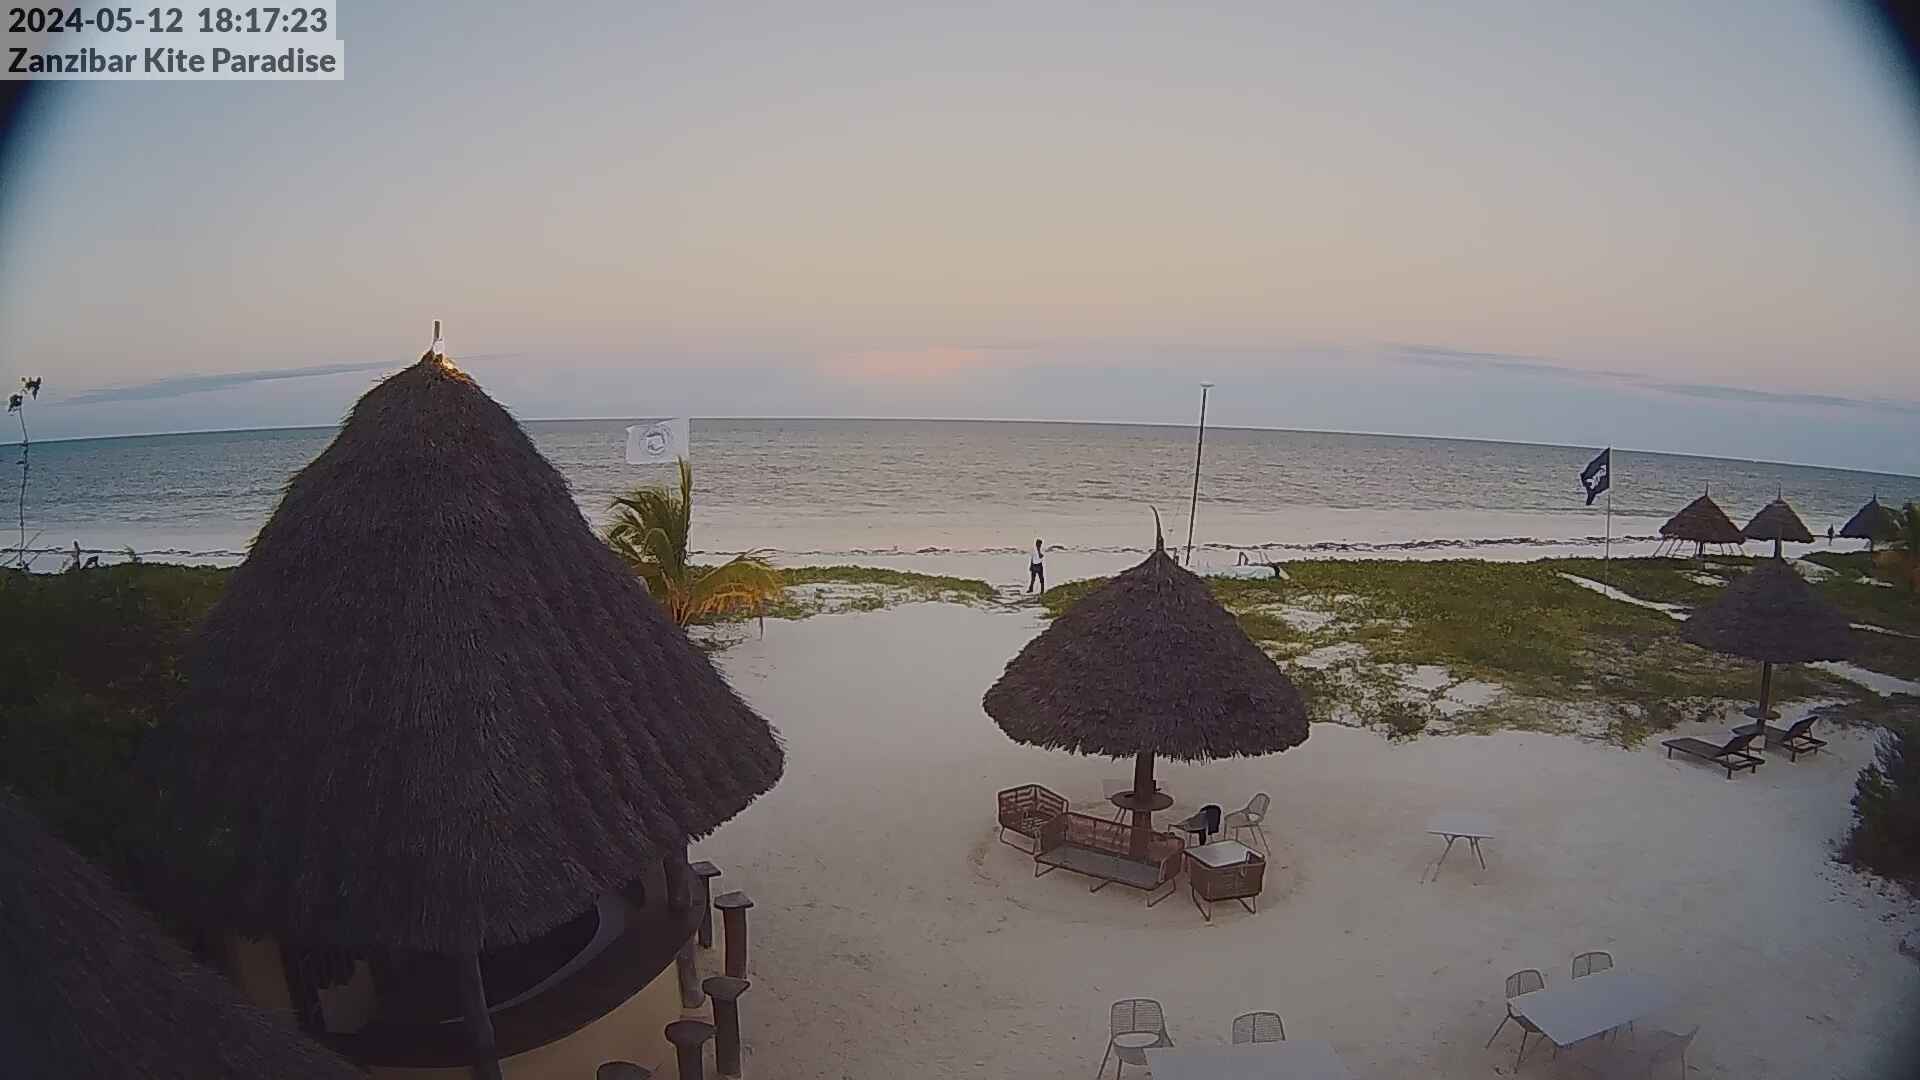 Paje Beach (Zanzibar) Fri. 18:18